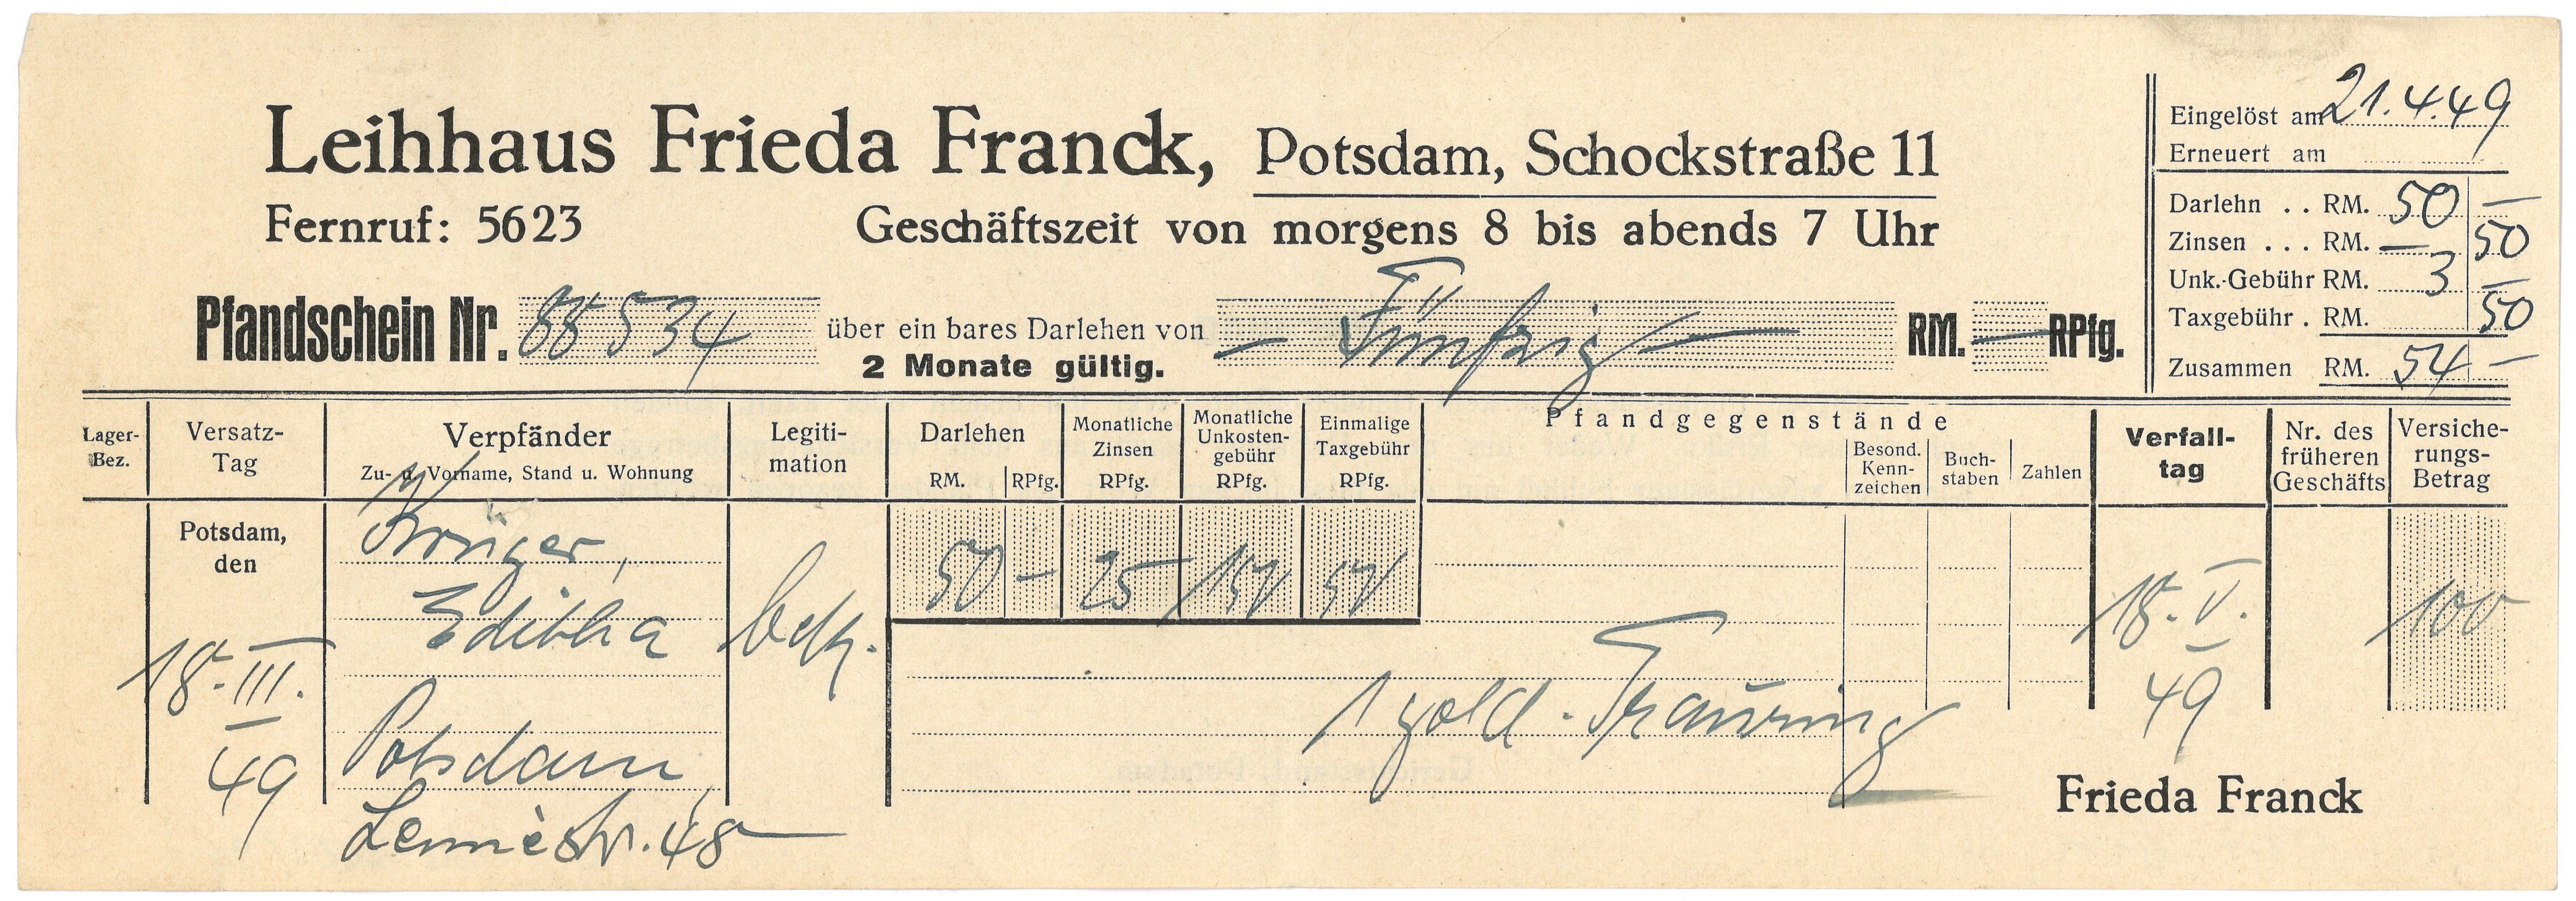 Pfandschein des Leihhauses Frieda Franck in Potsdam 1949 (Landesgeschichtliche Vereinigung für die Mark Brandenburg e.V., Archiv CC BY)